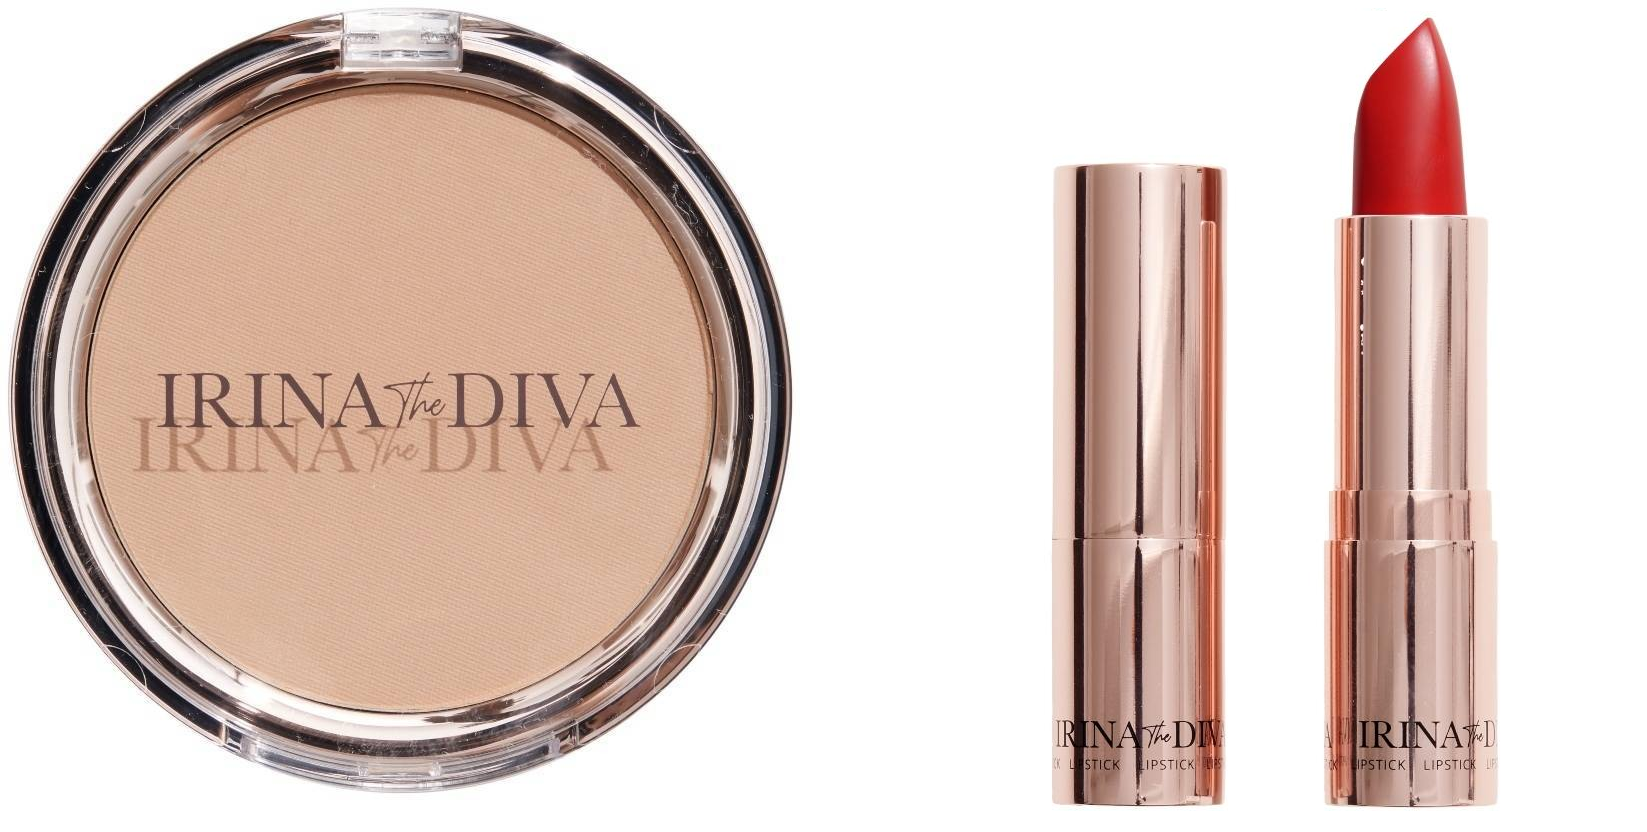 Irina The Diva - Lipstick 004 MRS. OLSEN + Filter Matte Bronzing Powder Natural Beauty 001 - Skjønnhet